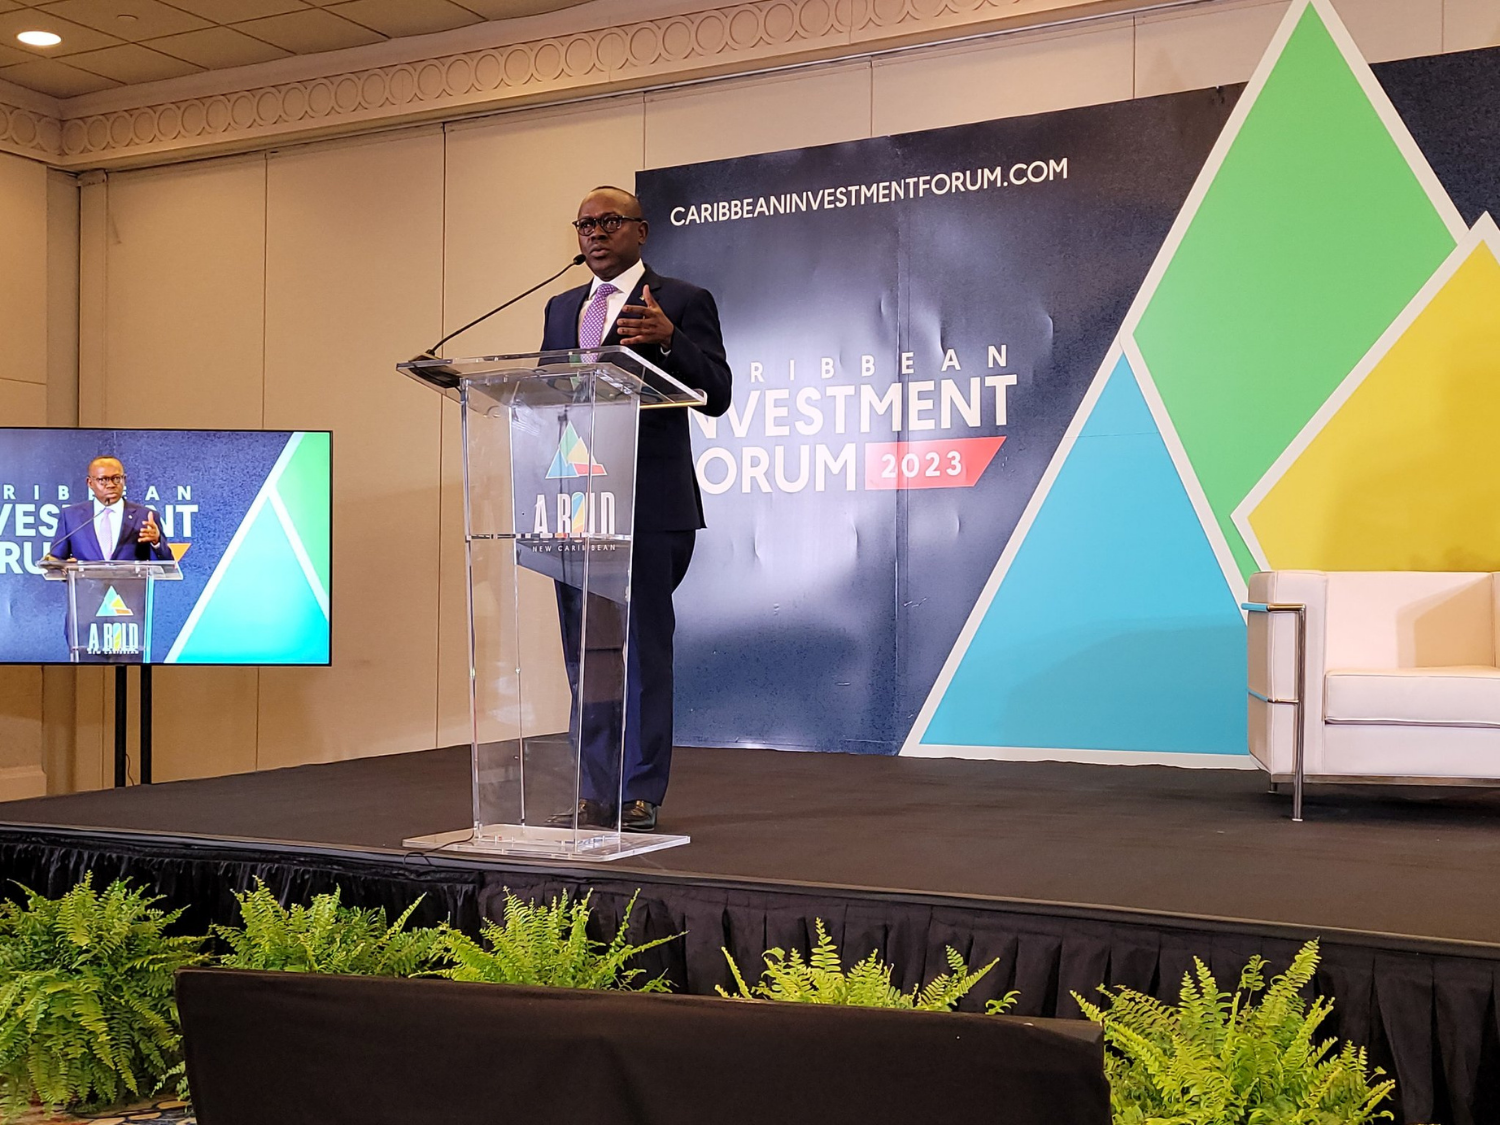 Le Forum 2023 sur l’investissement dans les Caraïbes promet des opportunités et des résultats audacieux